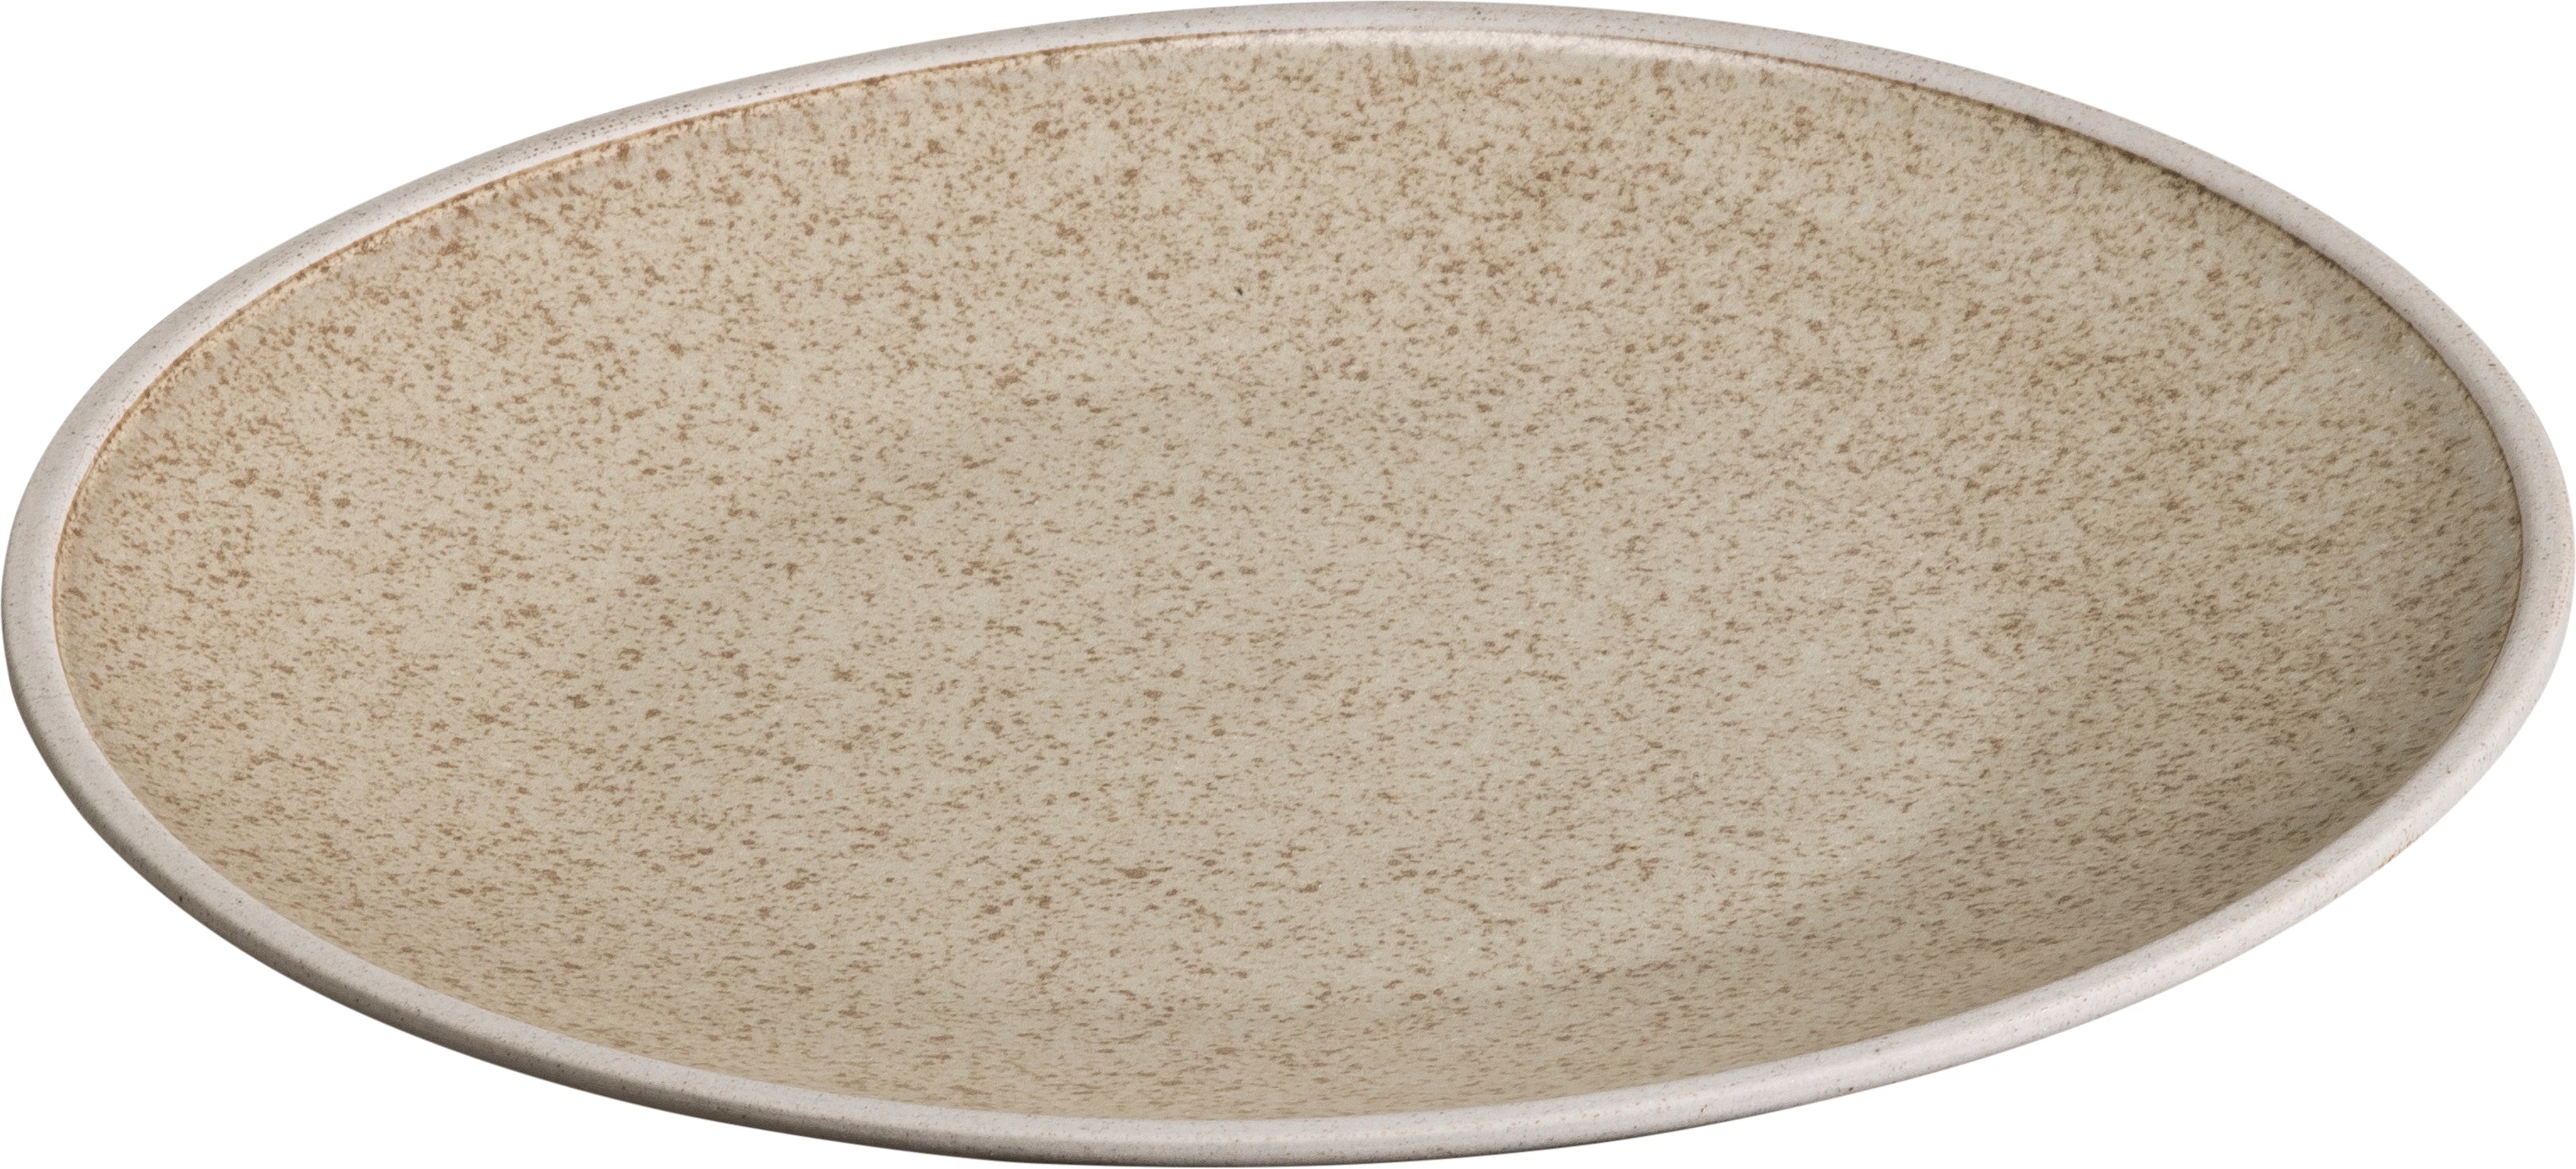 Sorelle flad tallerken uden fane, sand, ø21 cm